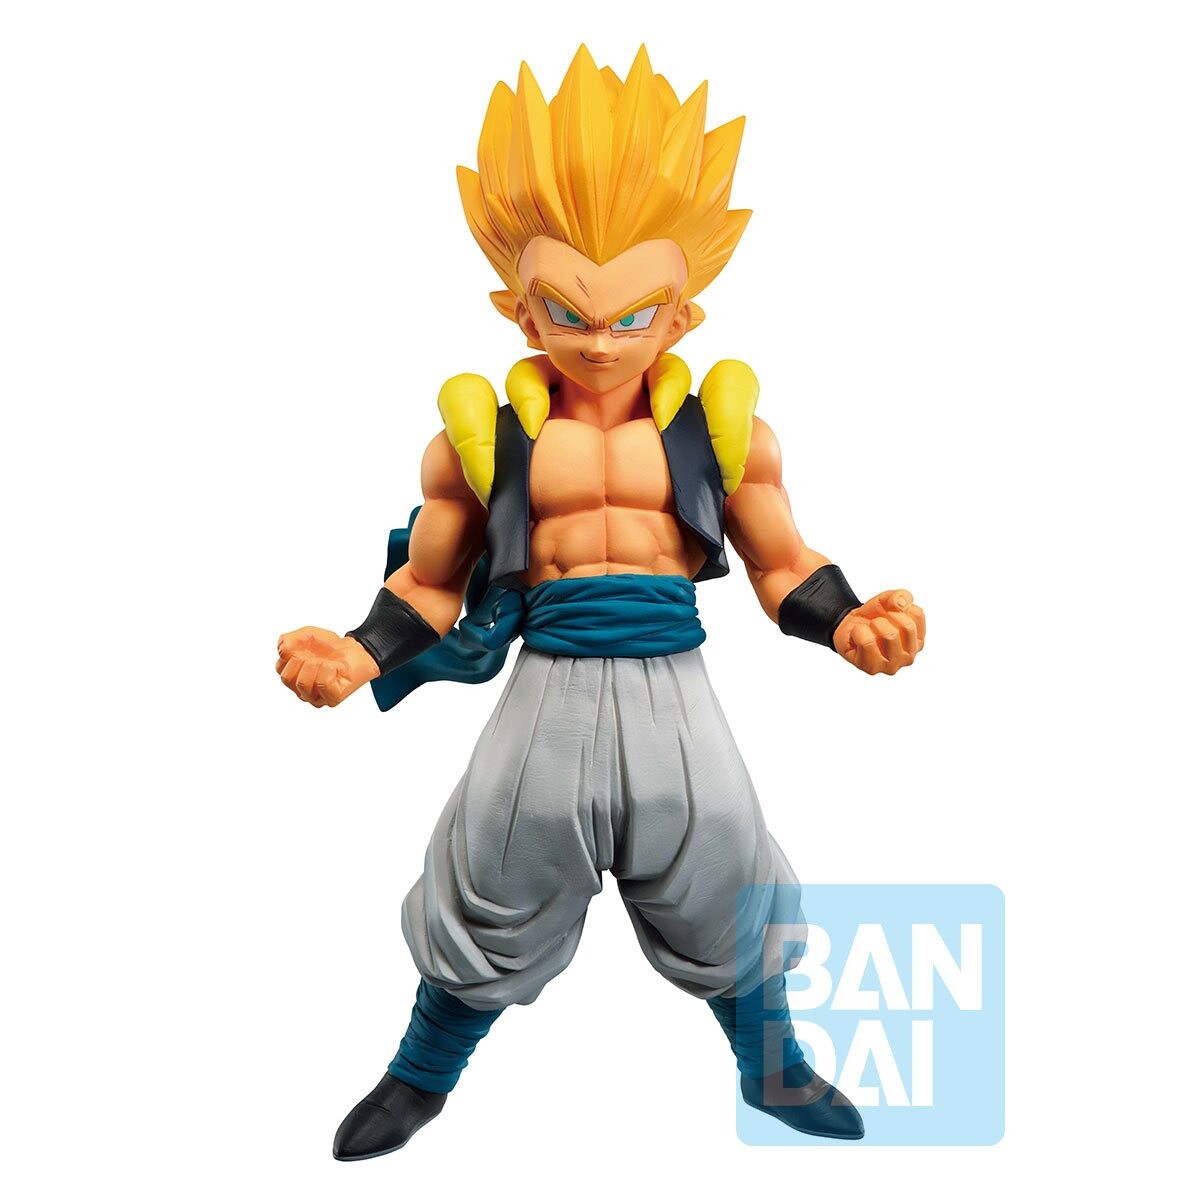 Gotenks Super Saiyan 3 - Dragon Ball Z - HQ DX - Dragon Ball Banpresto  action figure